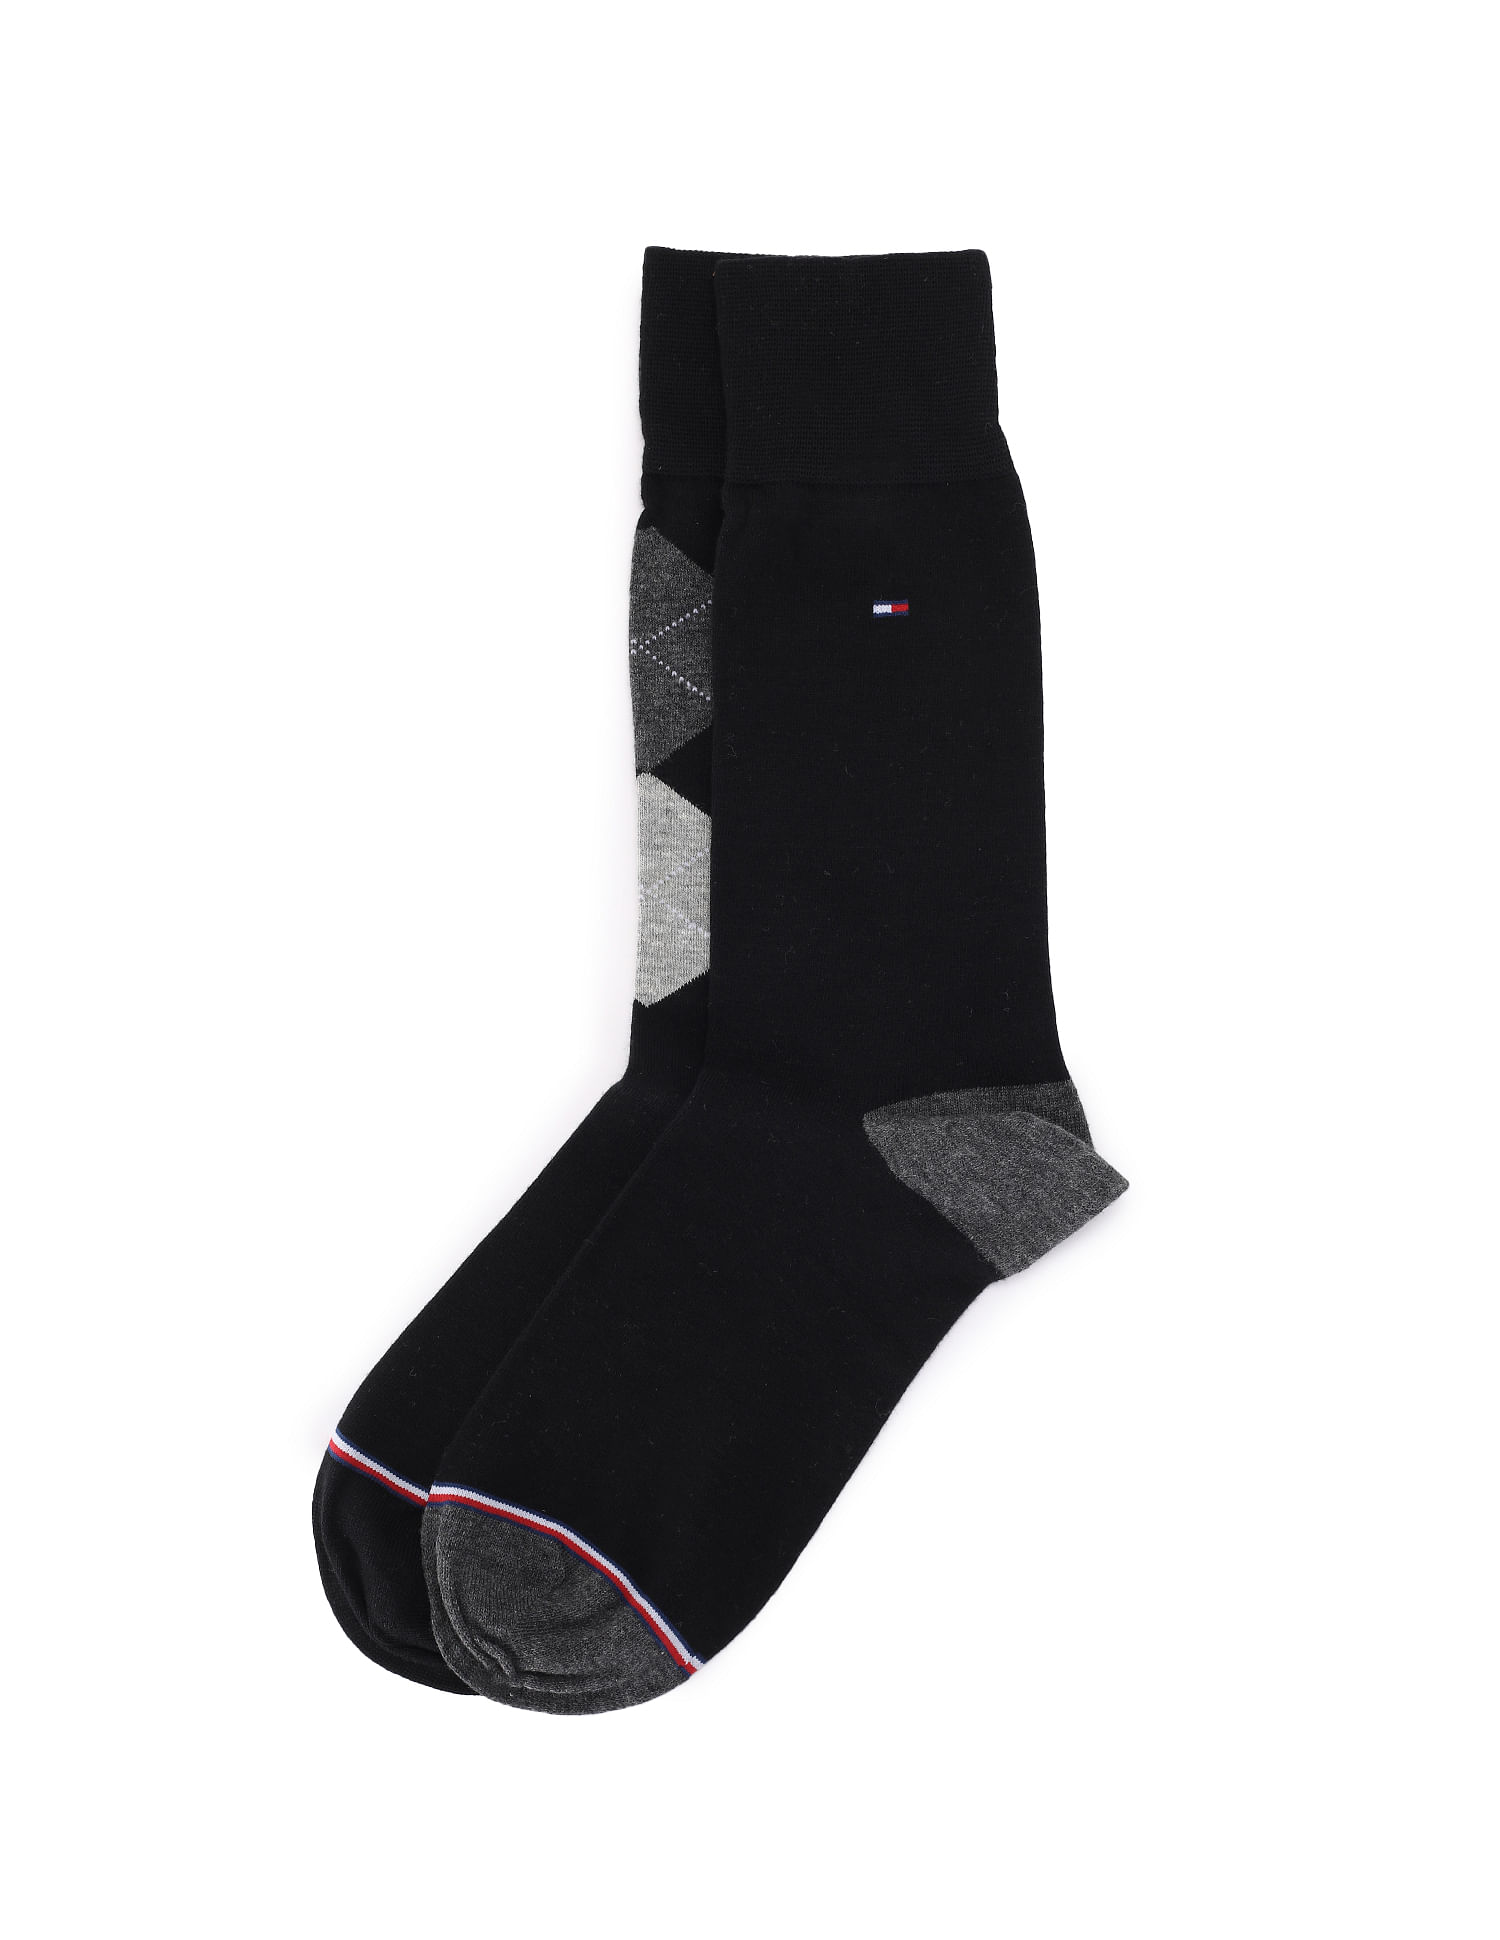 Lauren Ralph Lauren 6Pack Rib Trouser Socks  Southcentre Mall